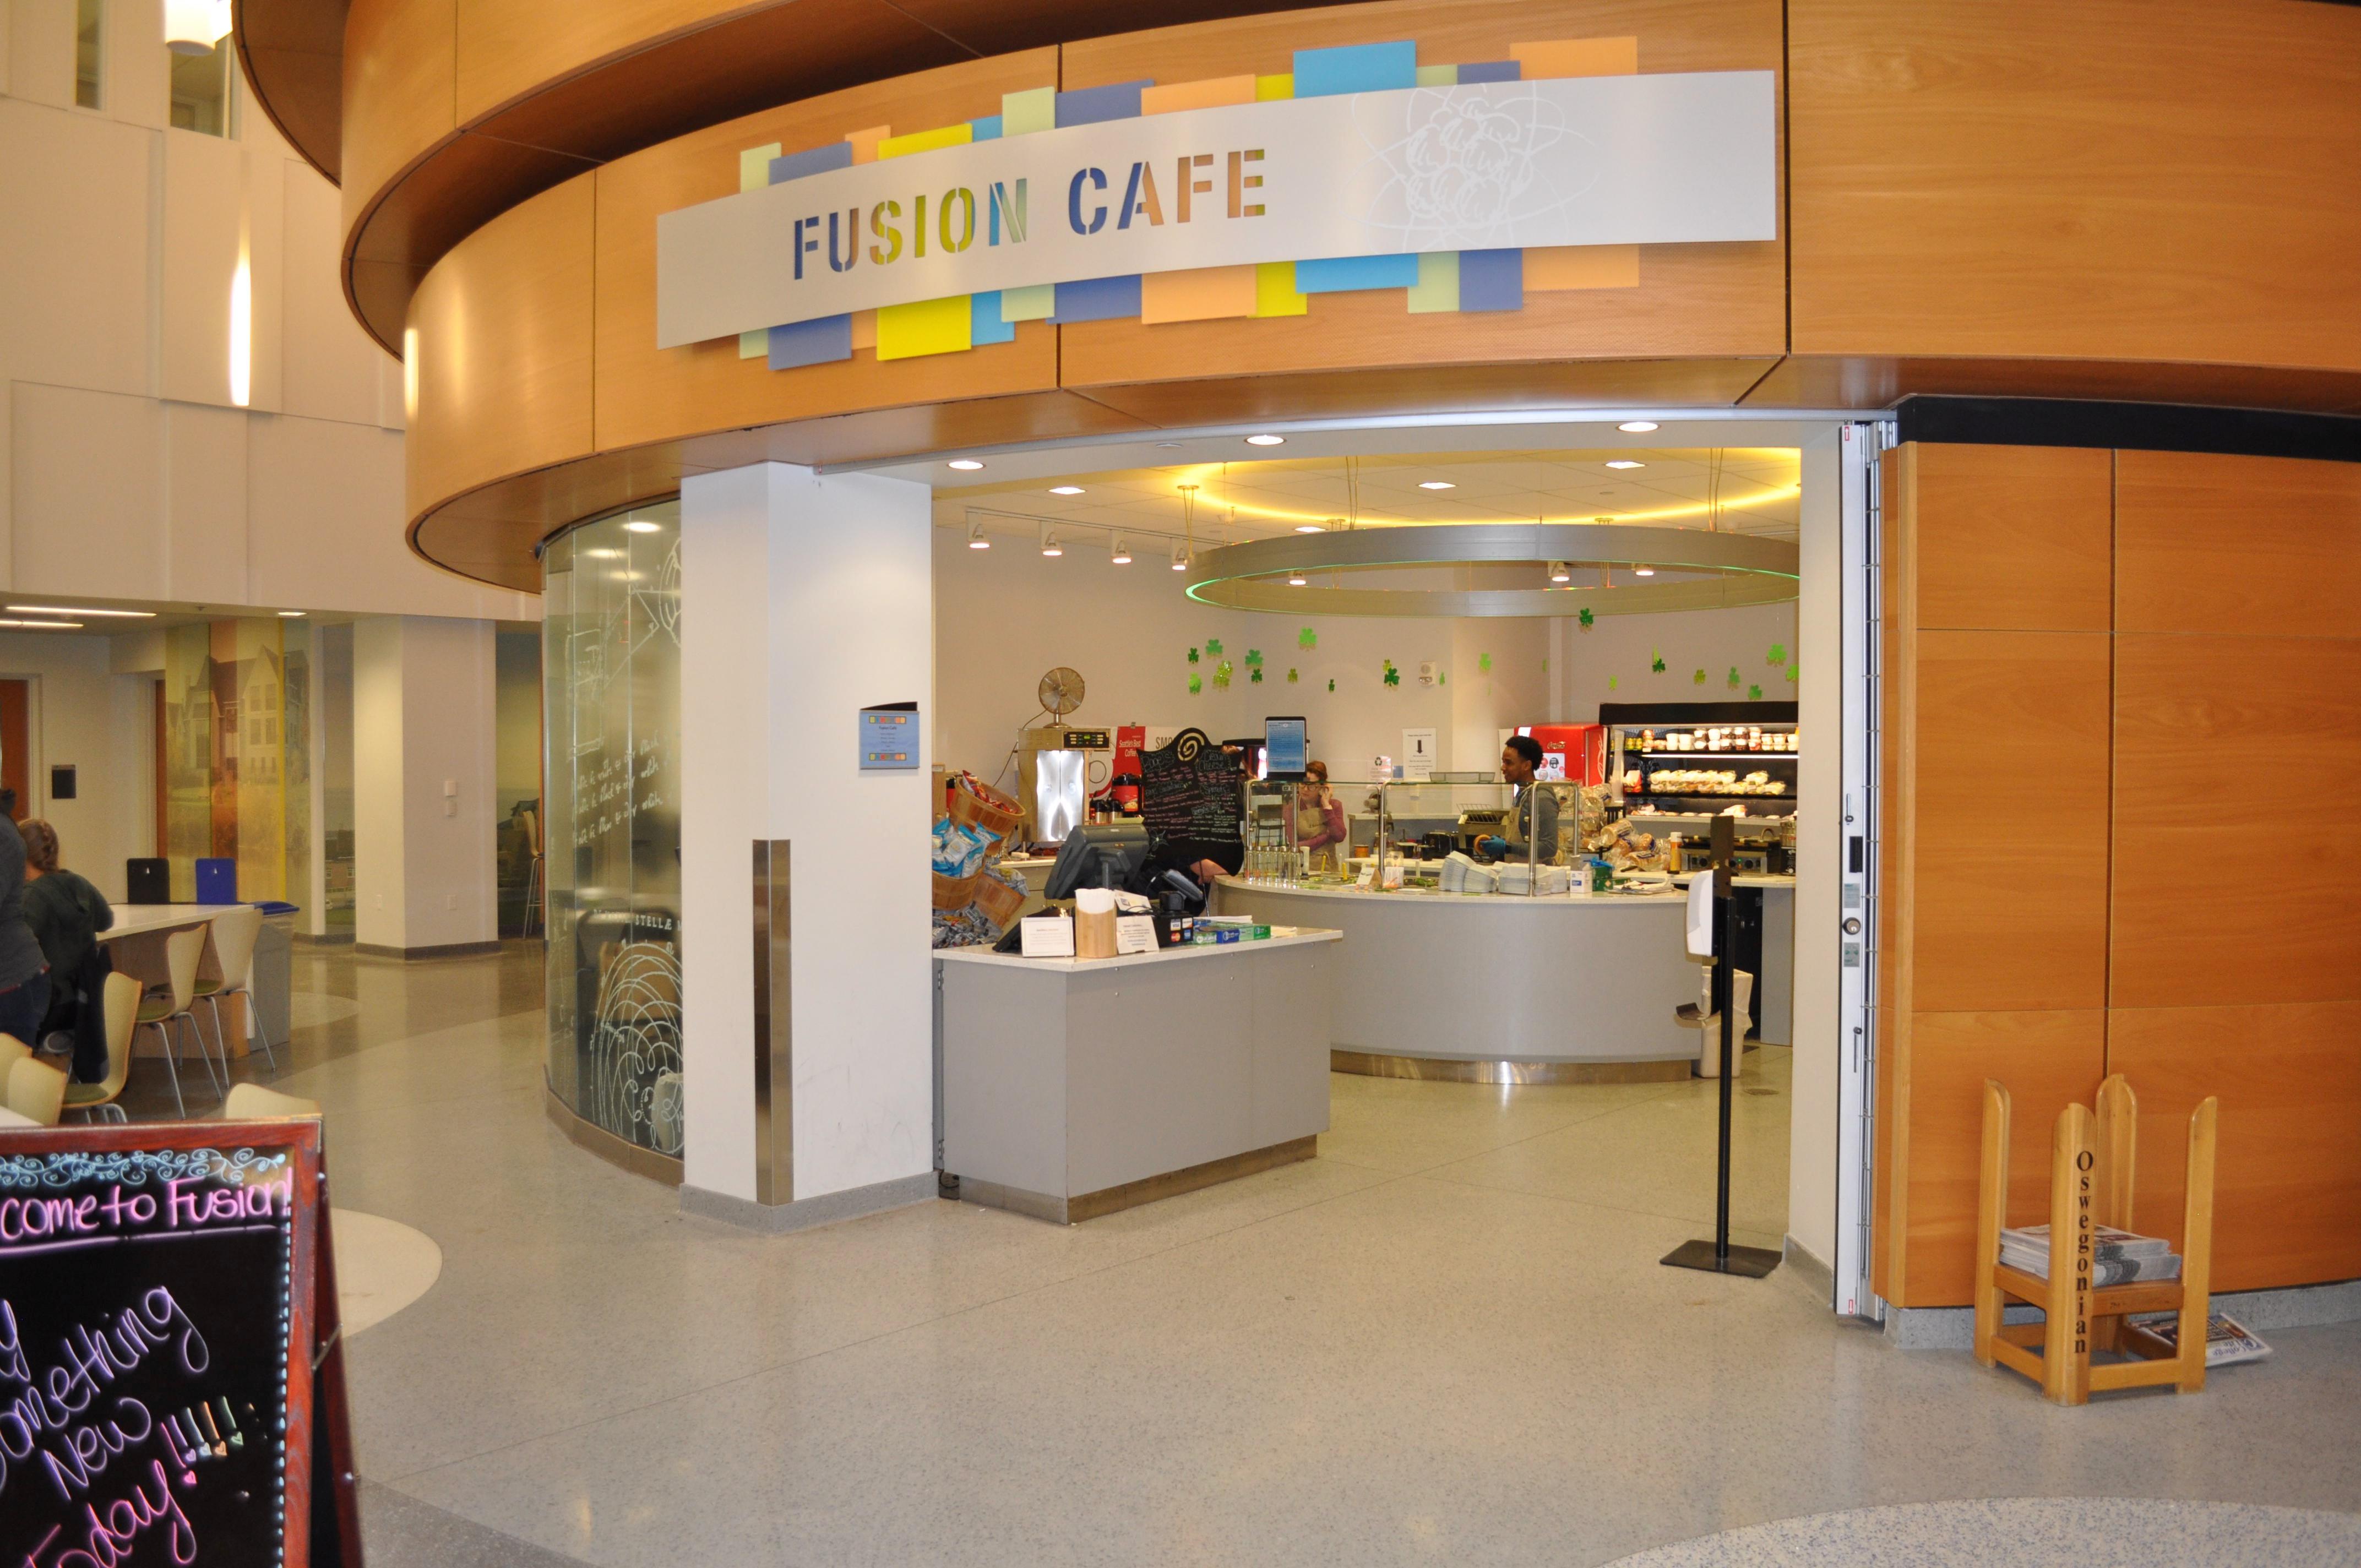 Fusion Cafe, The Nucleus, Shineman Center